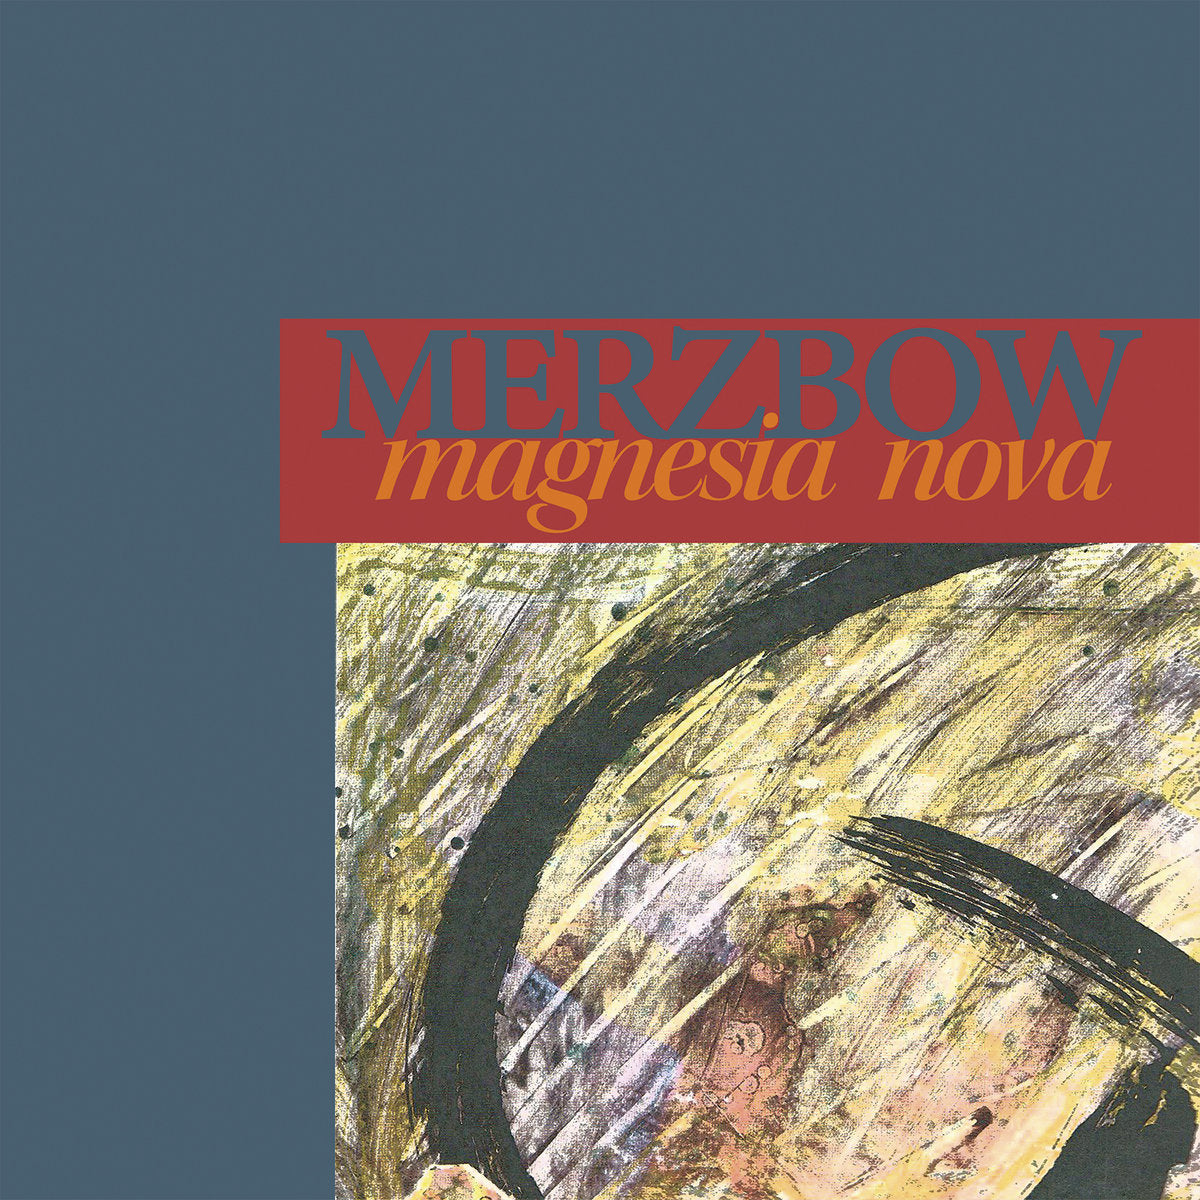 Merzbow "Magnesia Nova" 2LP